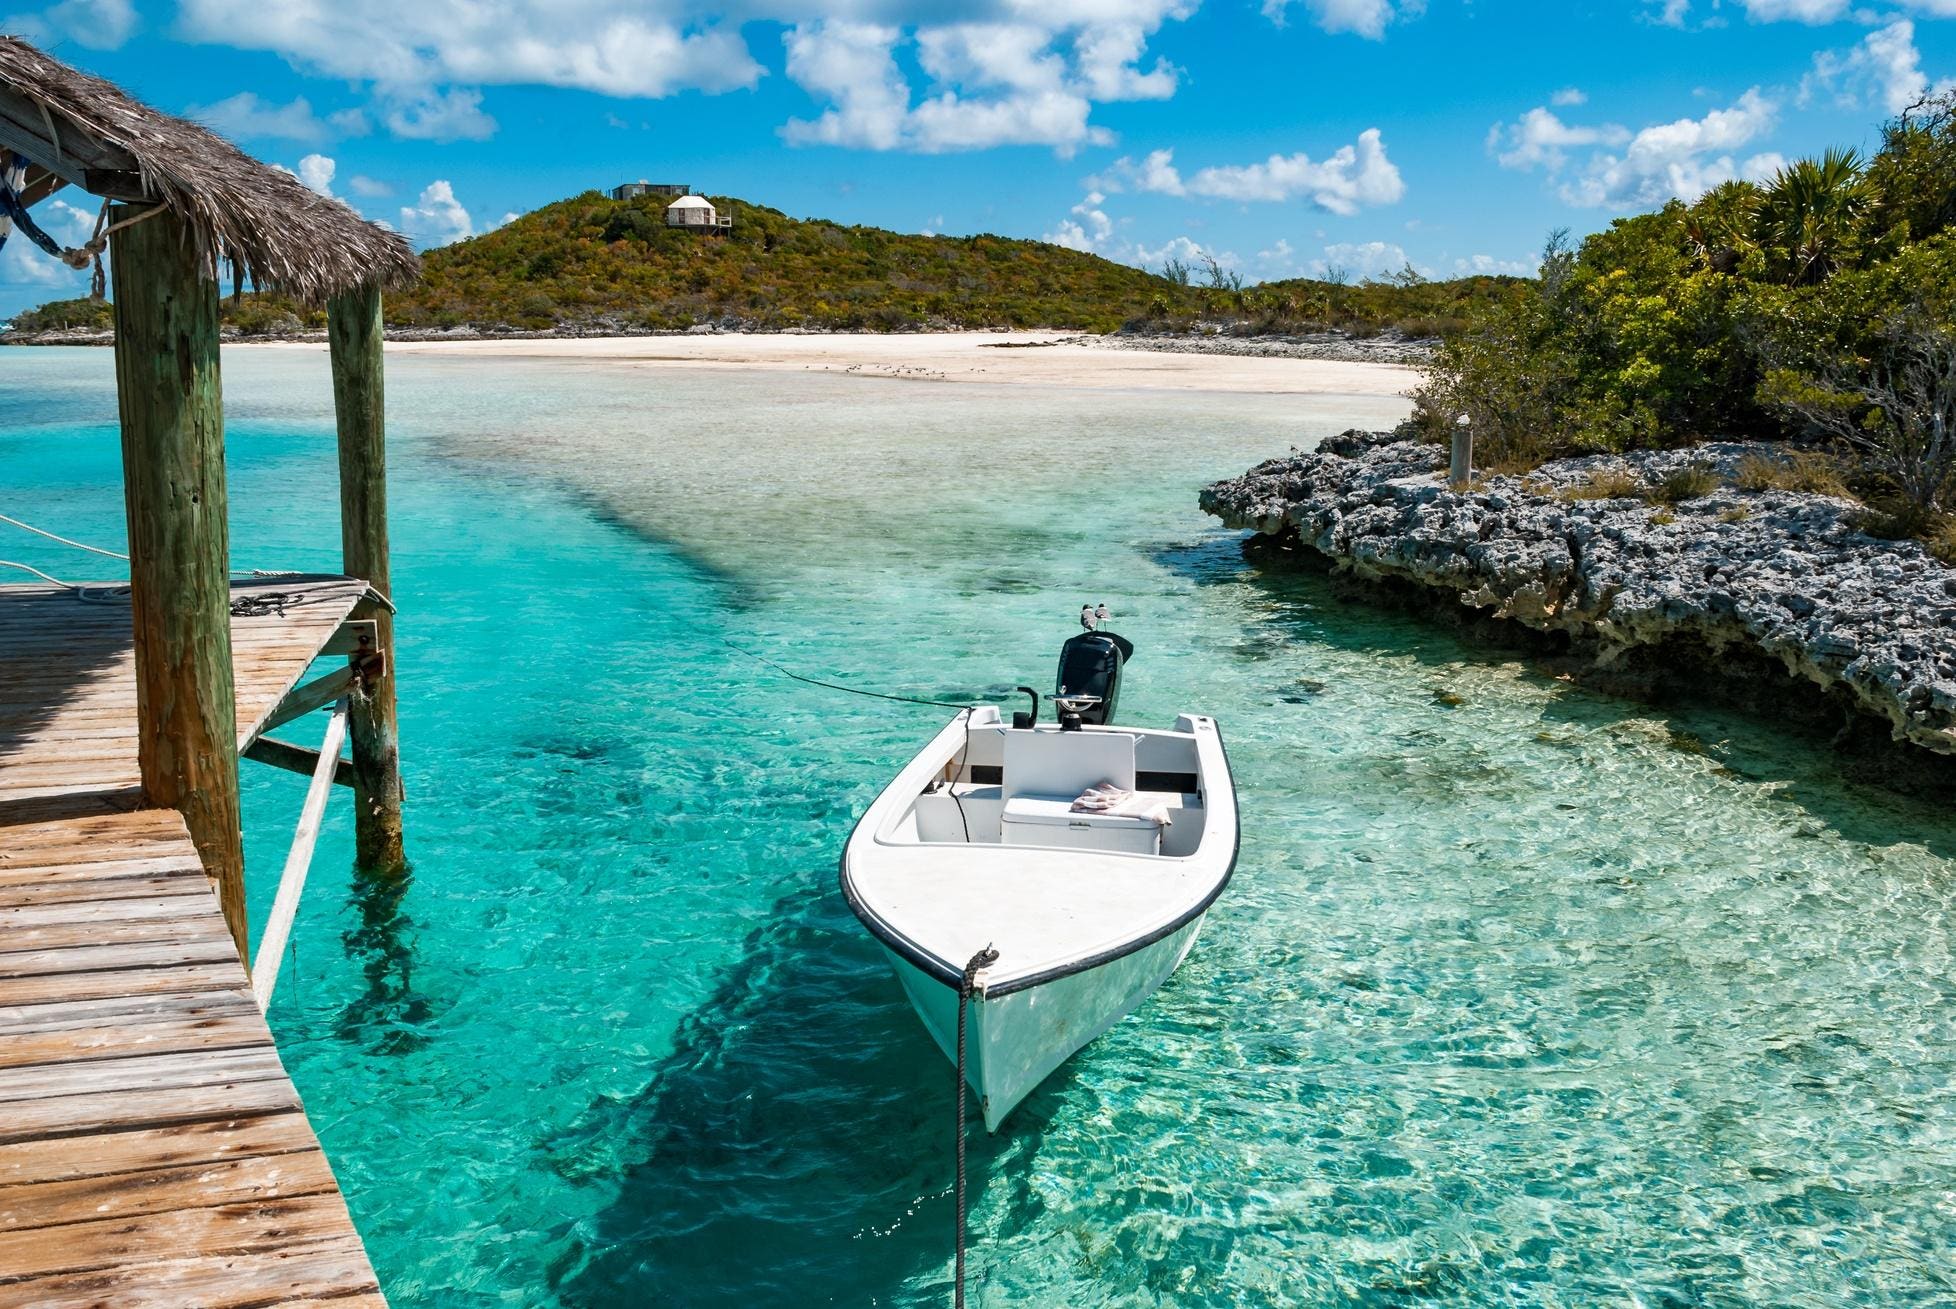 Exuma uurimine: Bahama saarestik, kus rikkad ja kuulsad ostavad erasaari